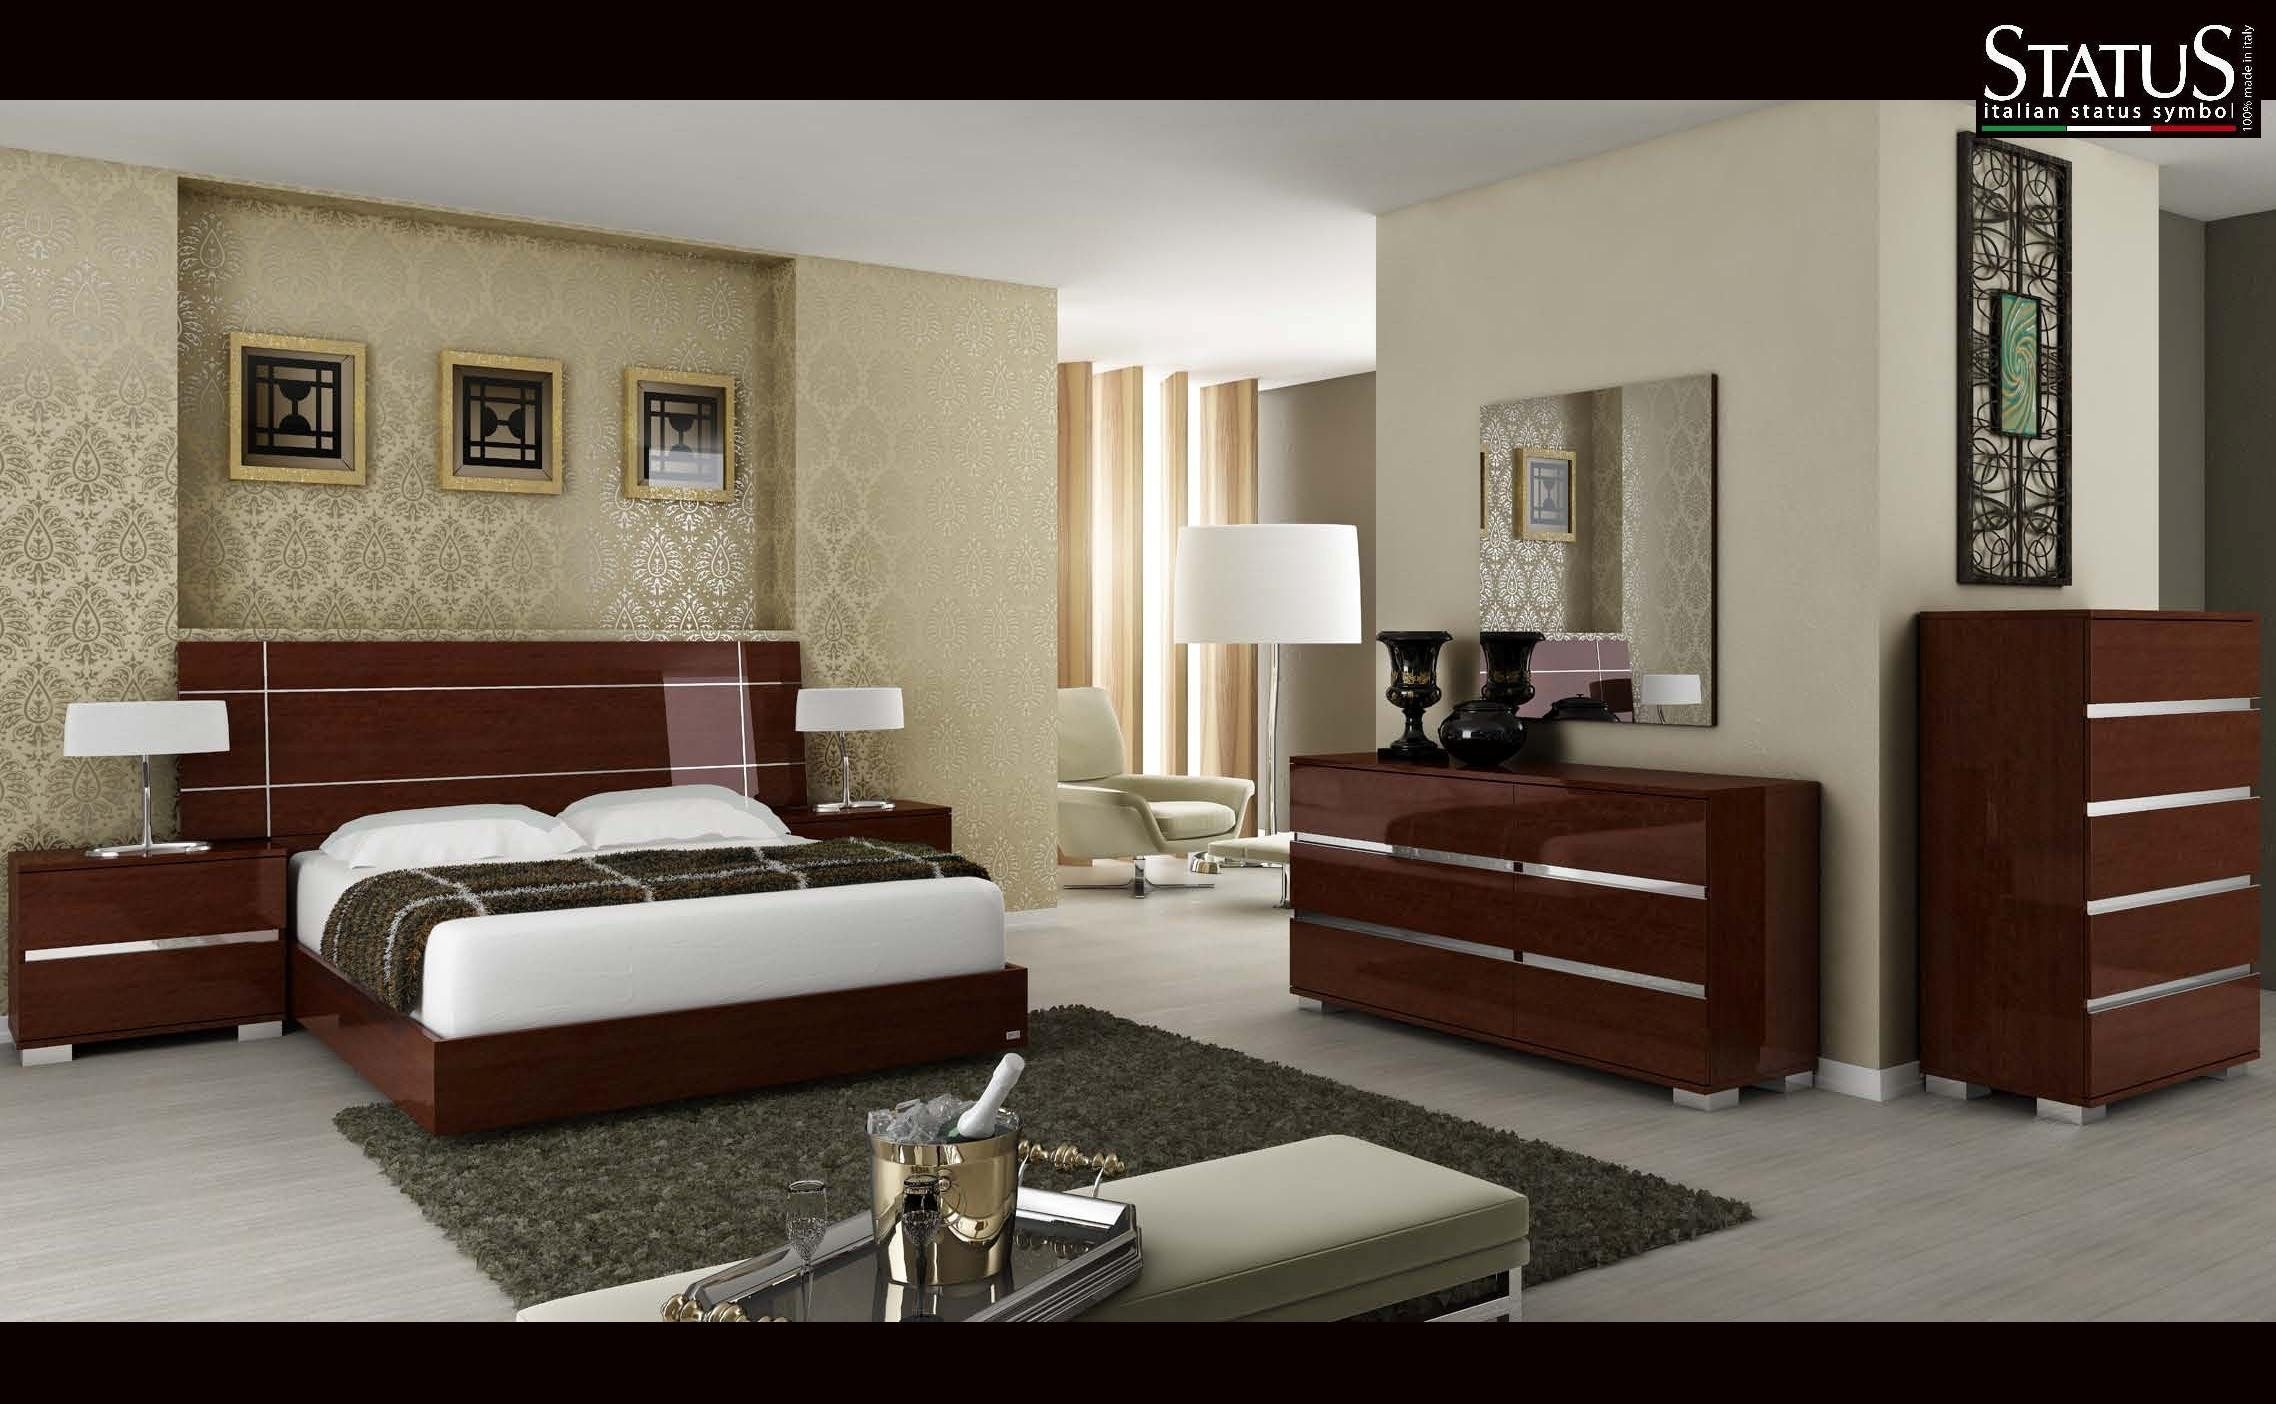 Modern King Bedroom Sets
 DREAM KING SIZE MODERN DESIGN BEDROOM SET WALNUT 5 pc